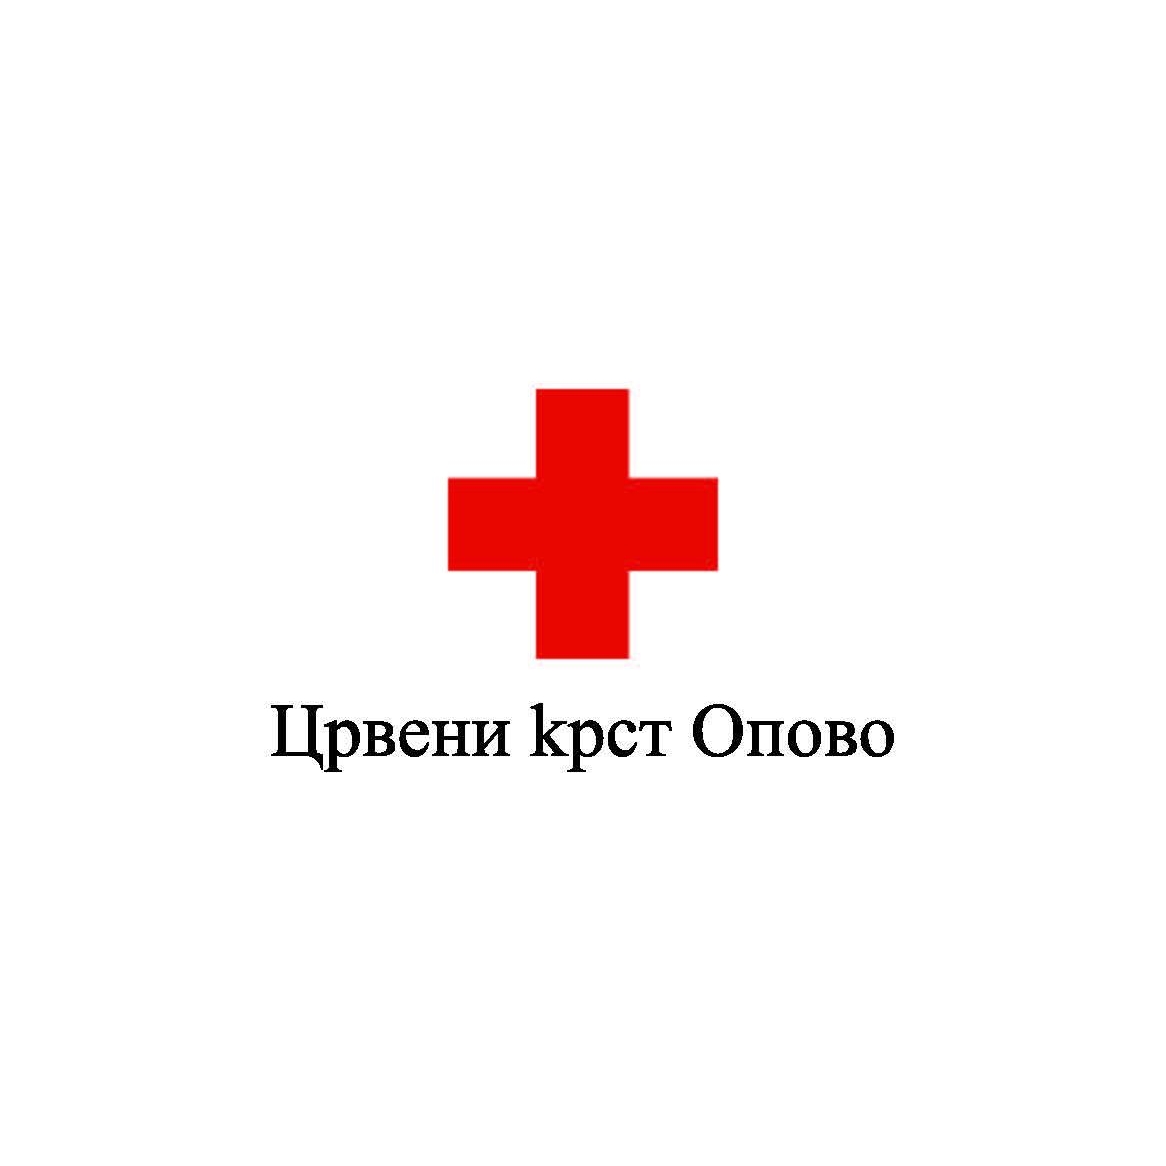 Dobrovoljno davanje krvi u Opovu i Sefkerinu